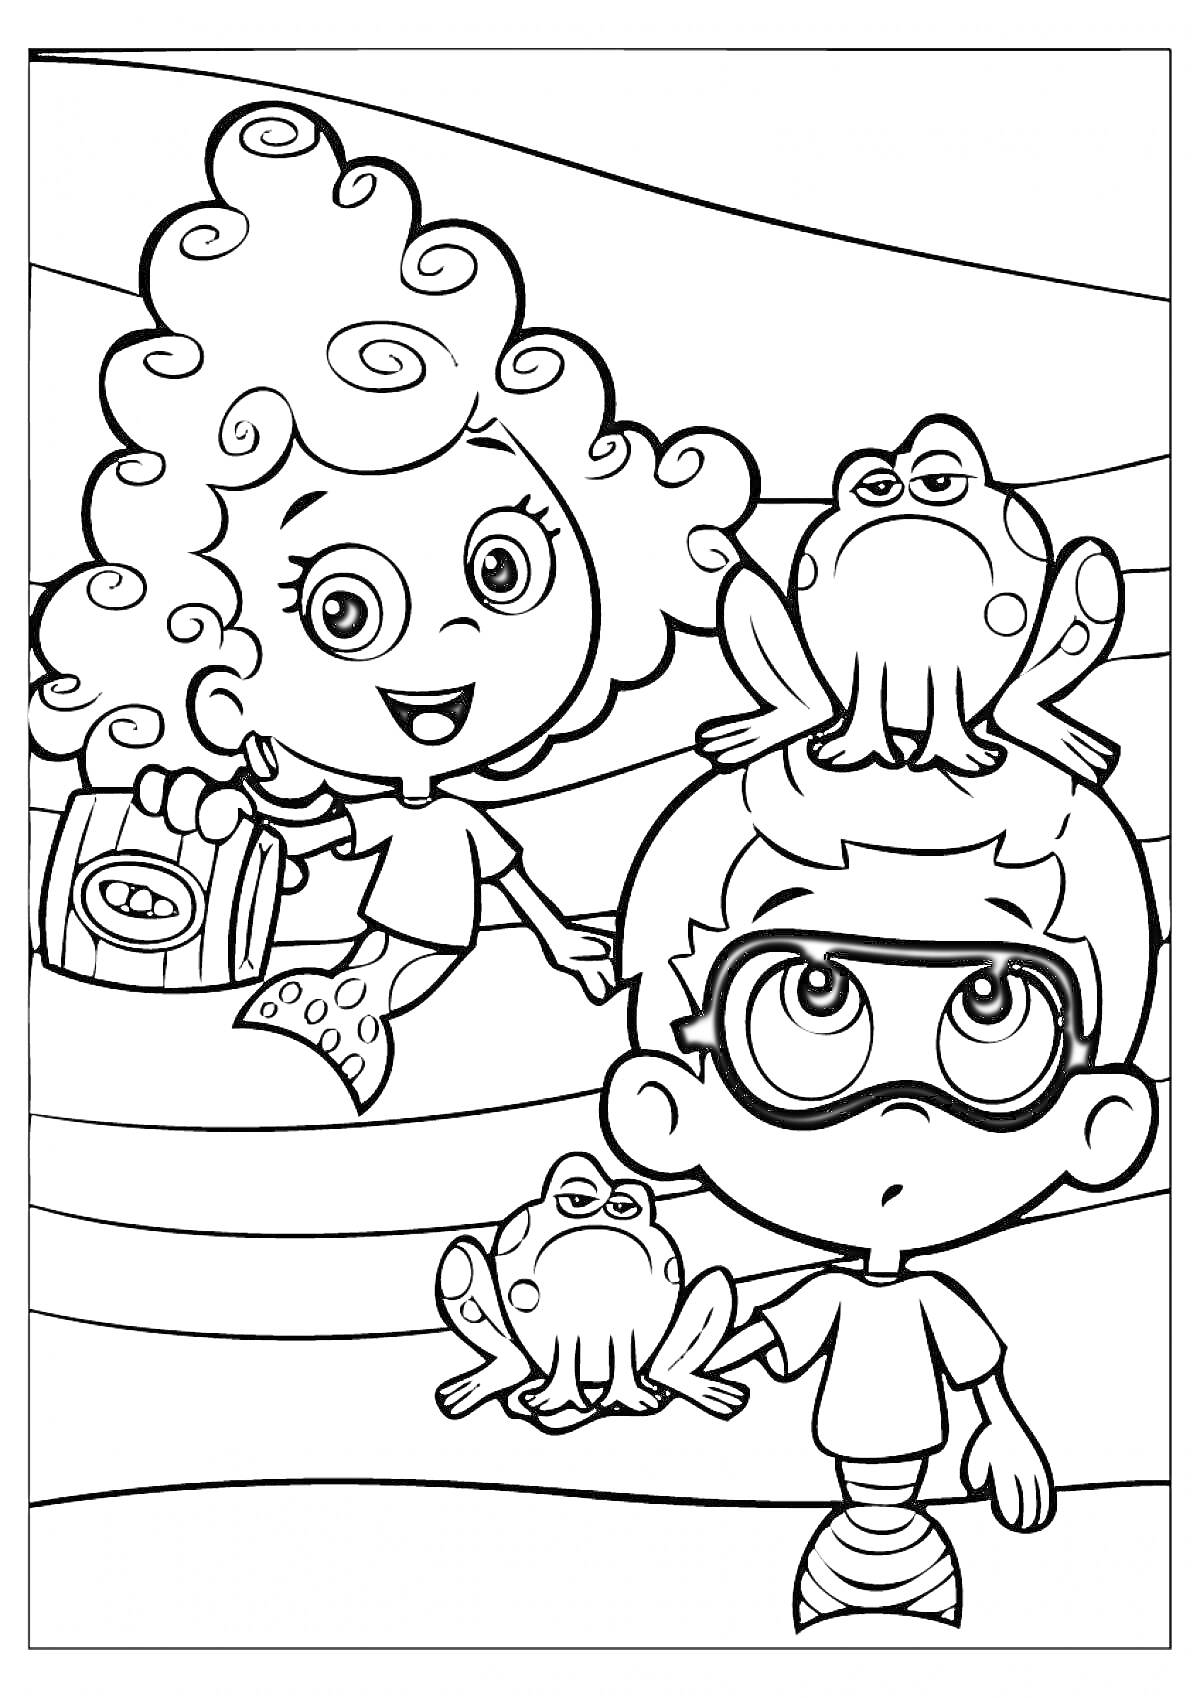 Раскраска Девочка и мальчик из мультфильма держат лягушек на воде